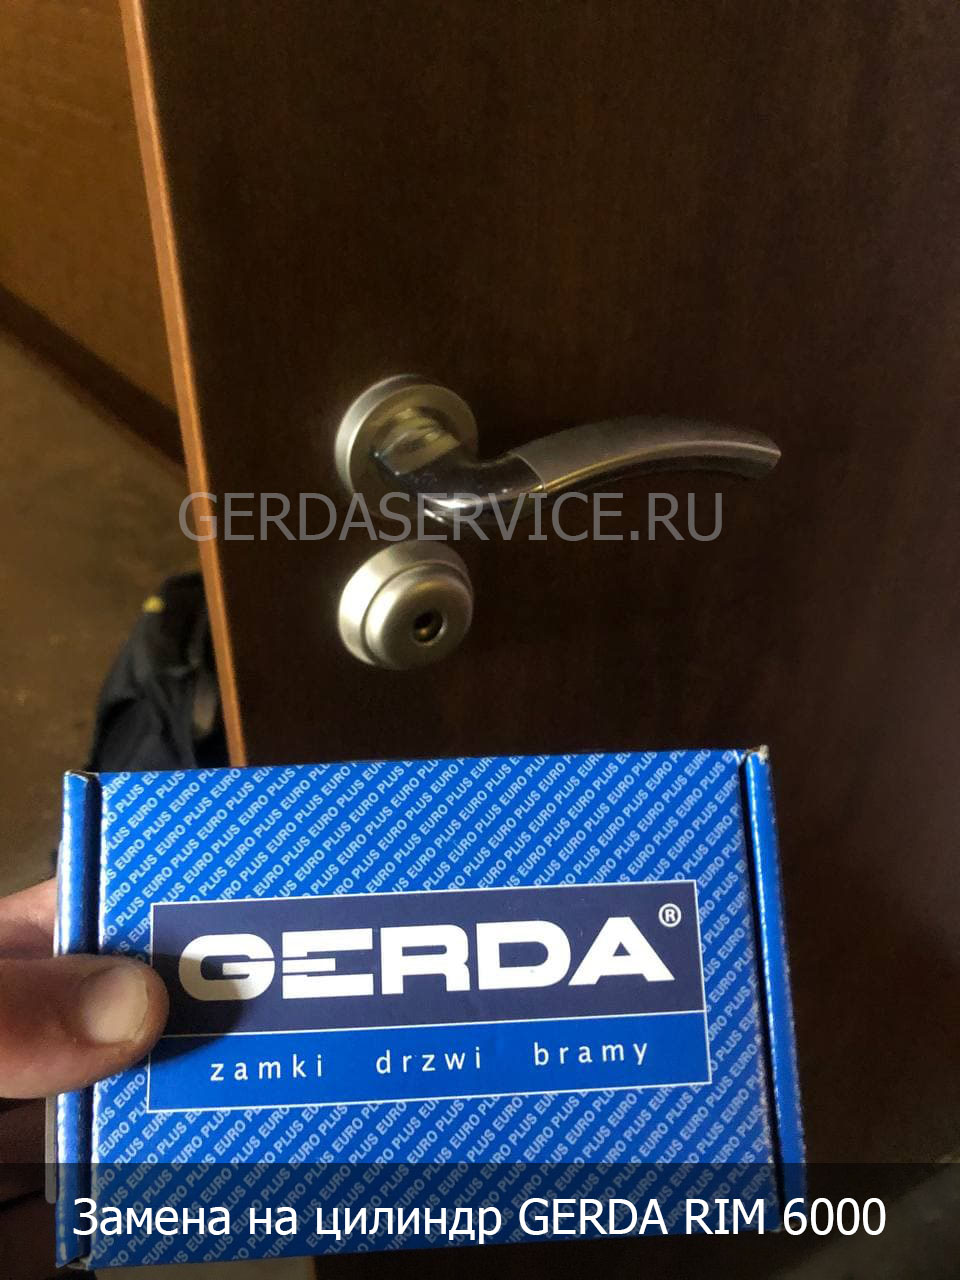 Gerda-0